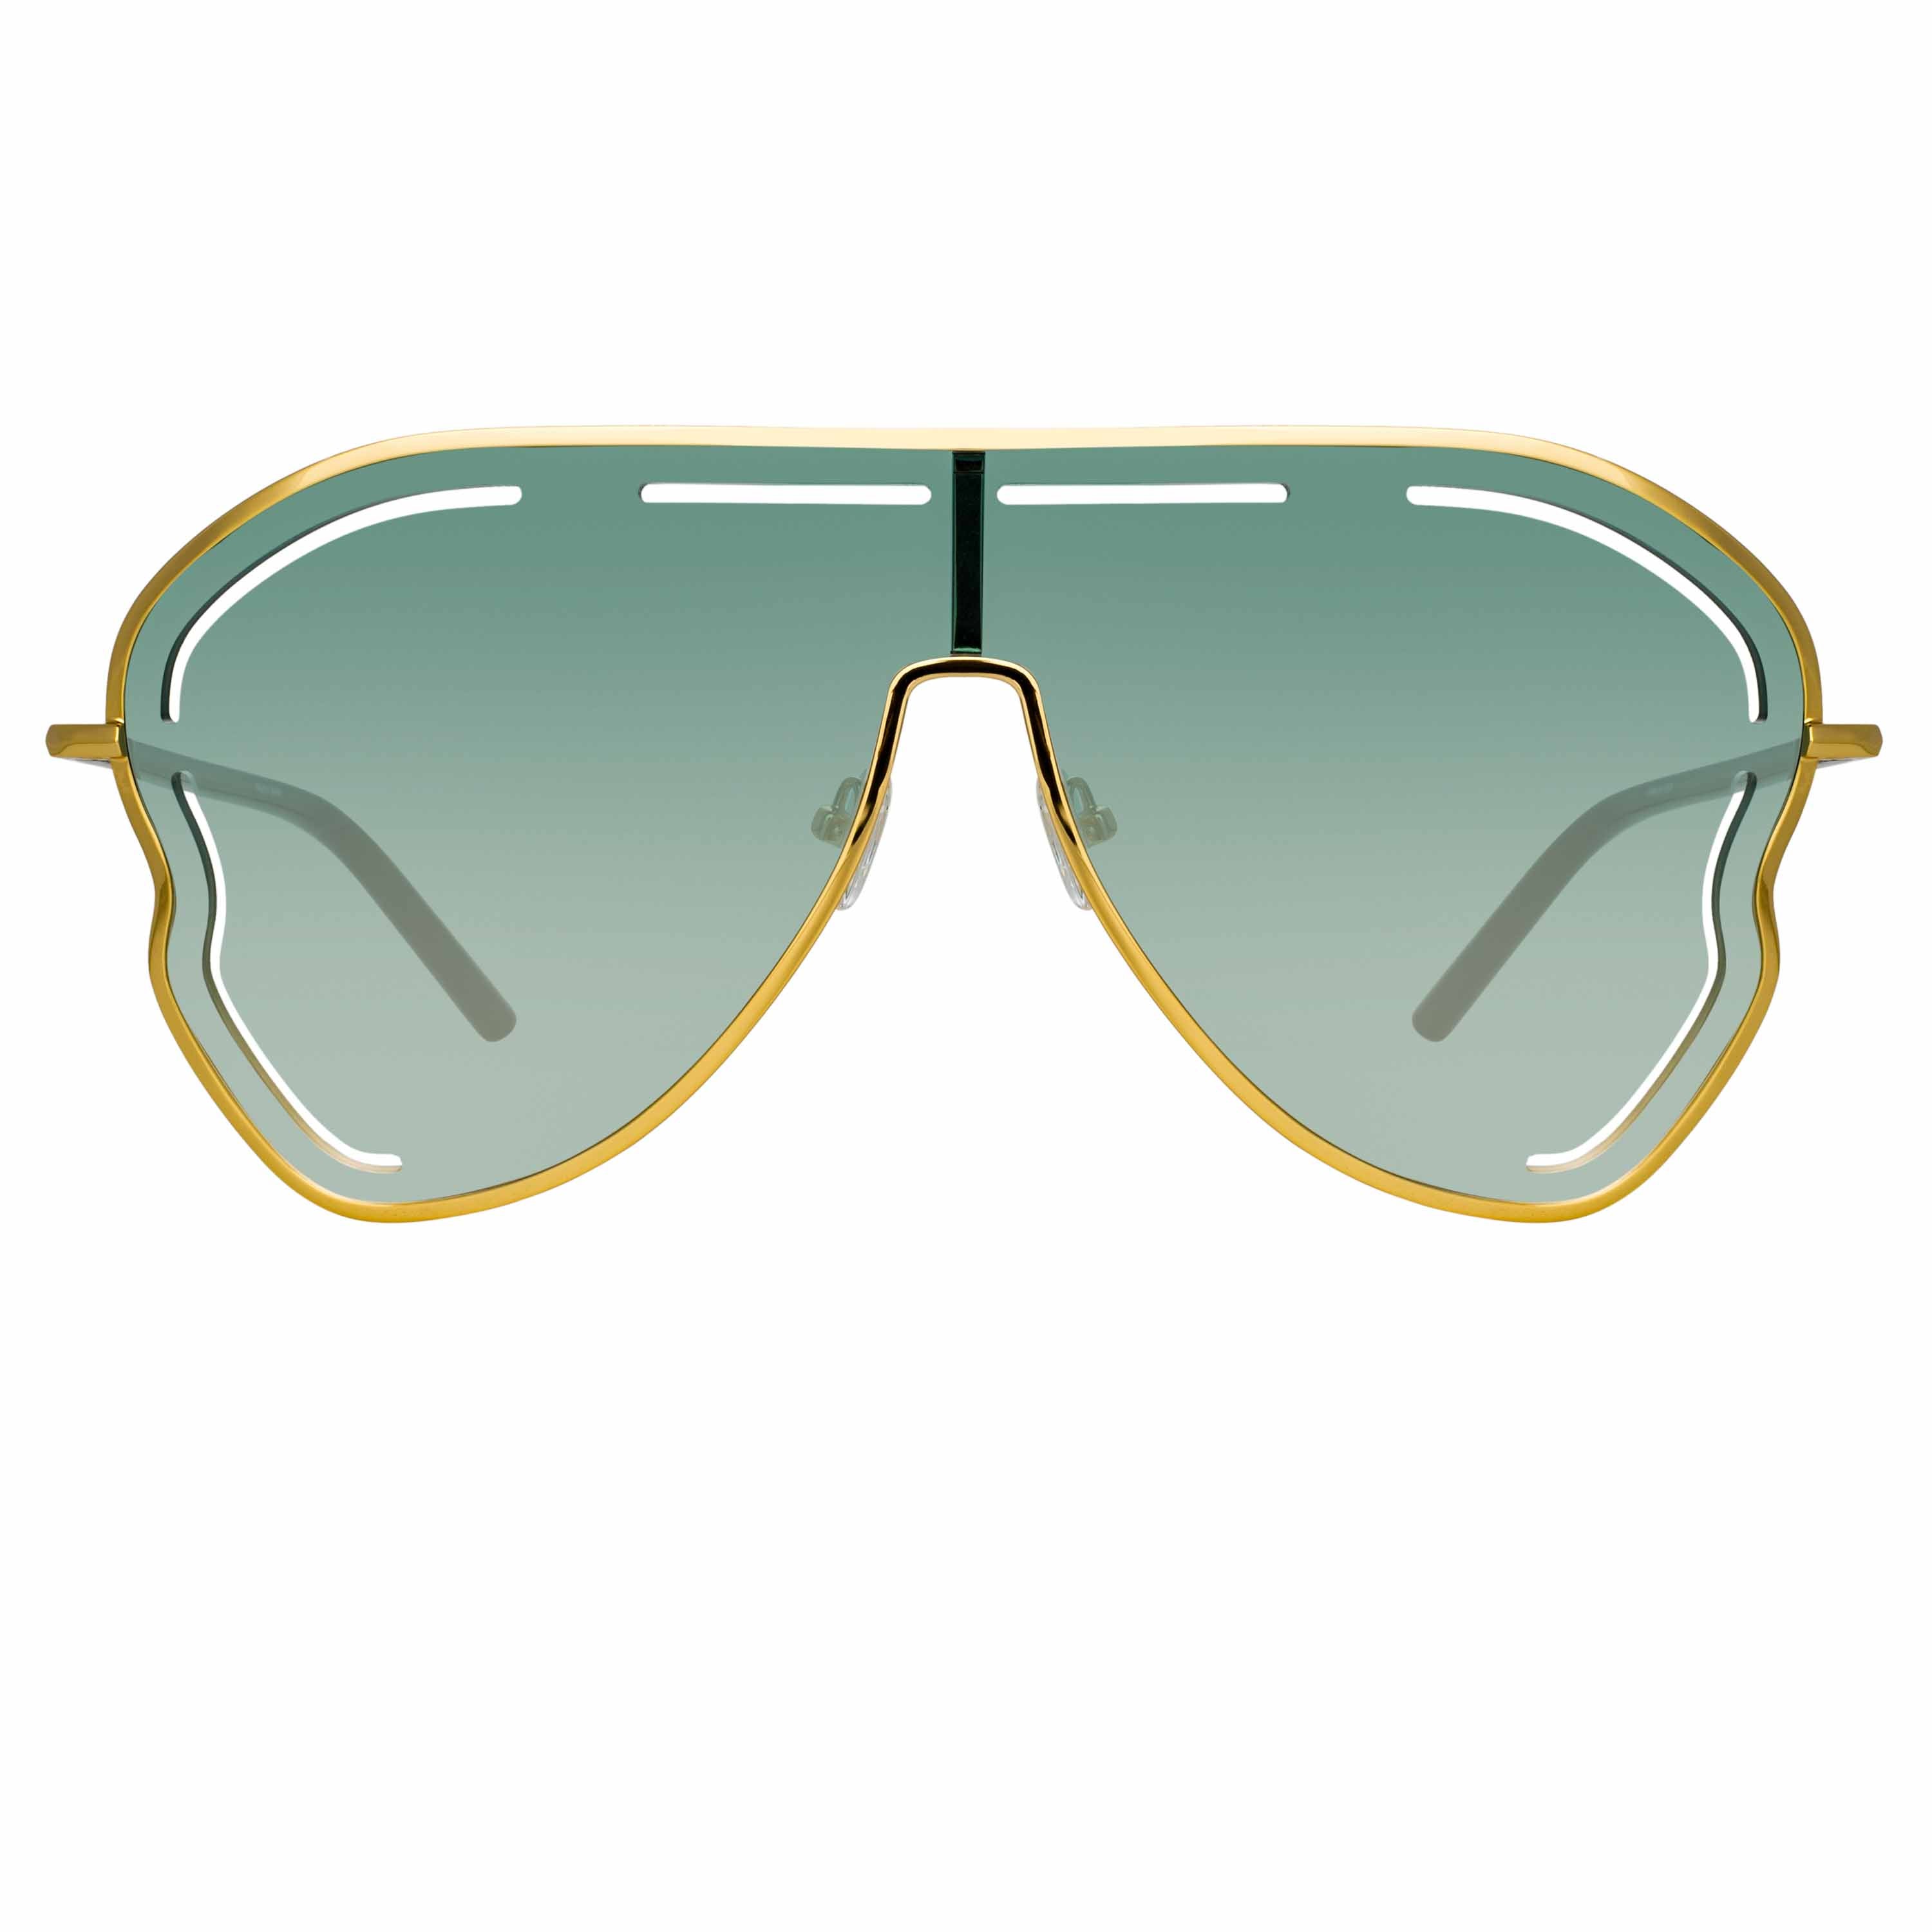 Gardenia Sunglasses in Green